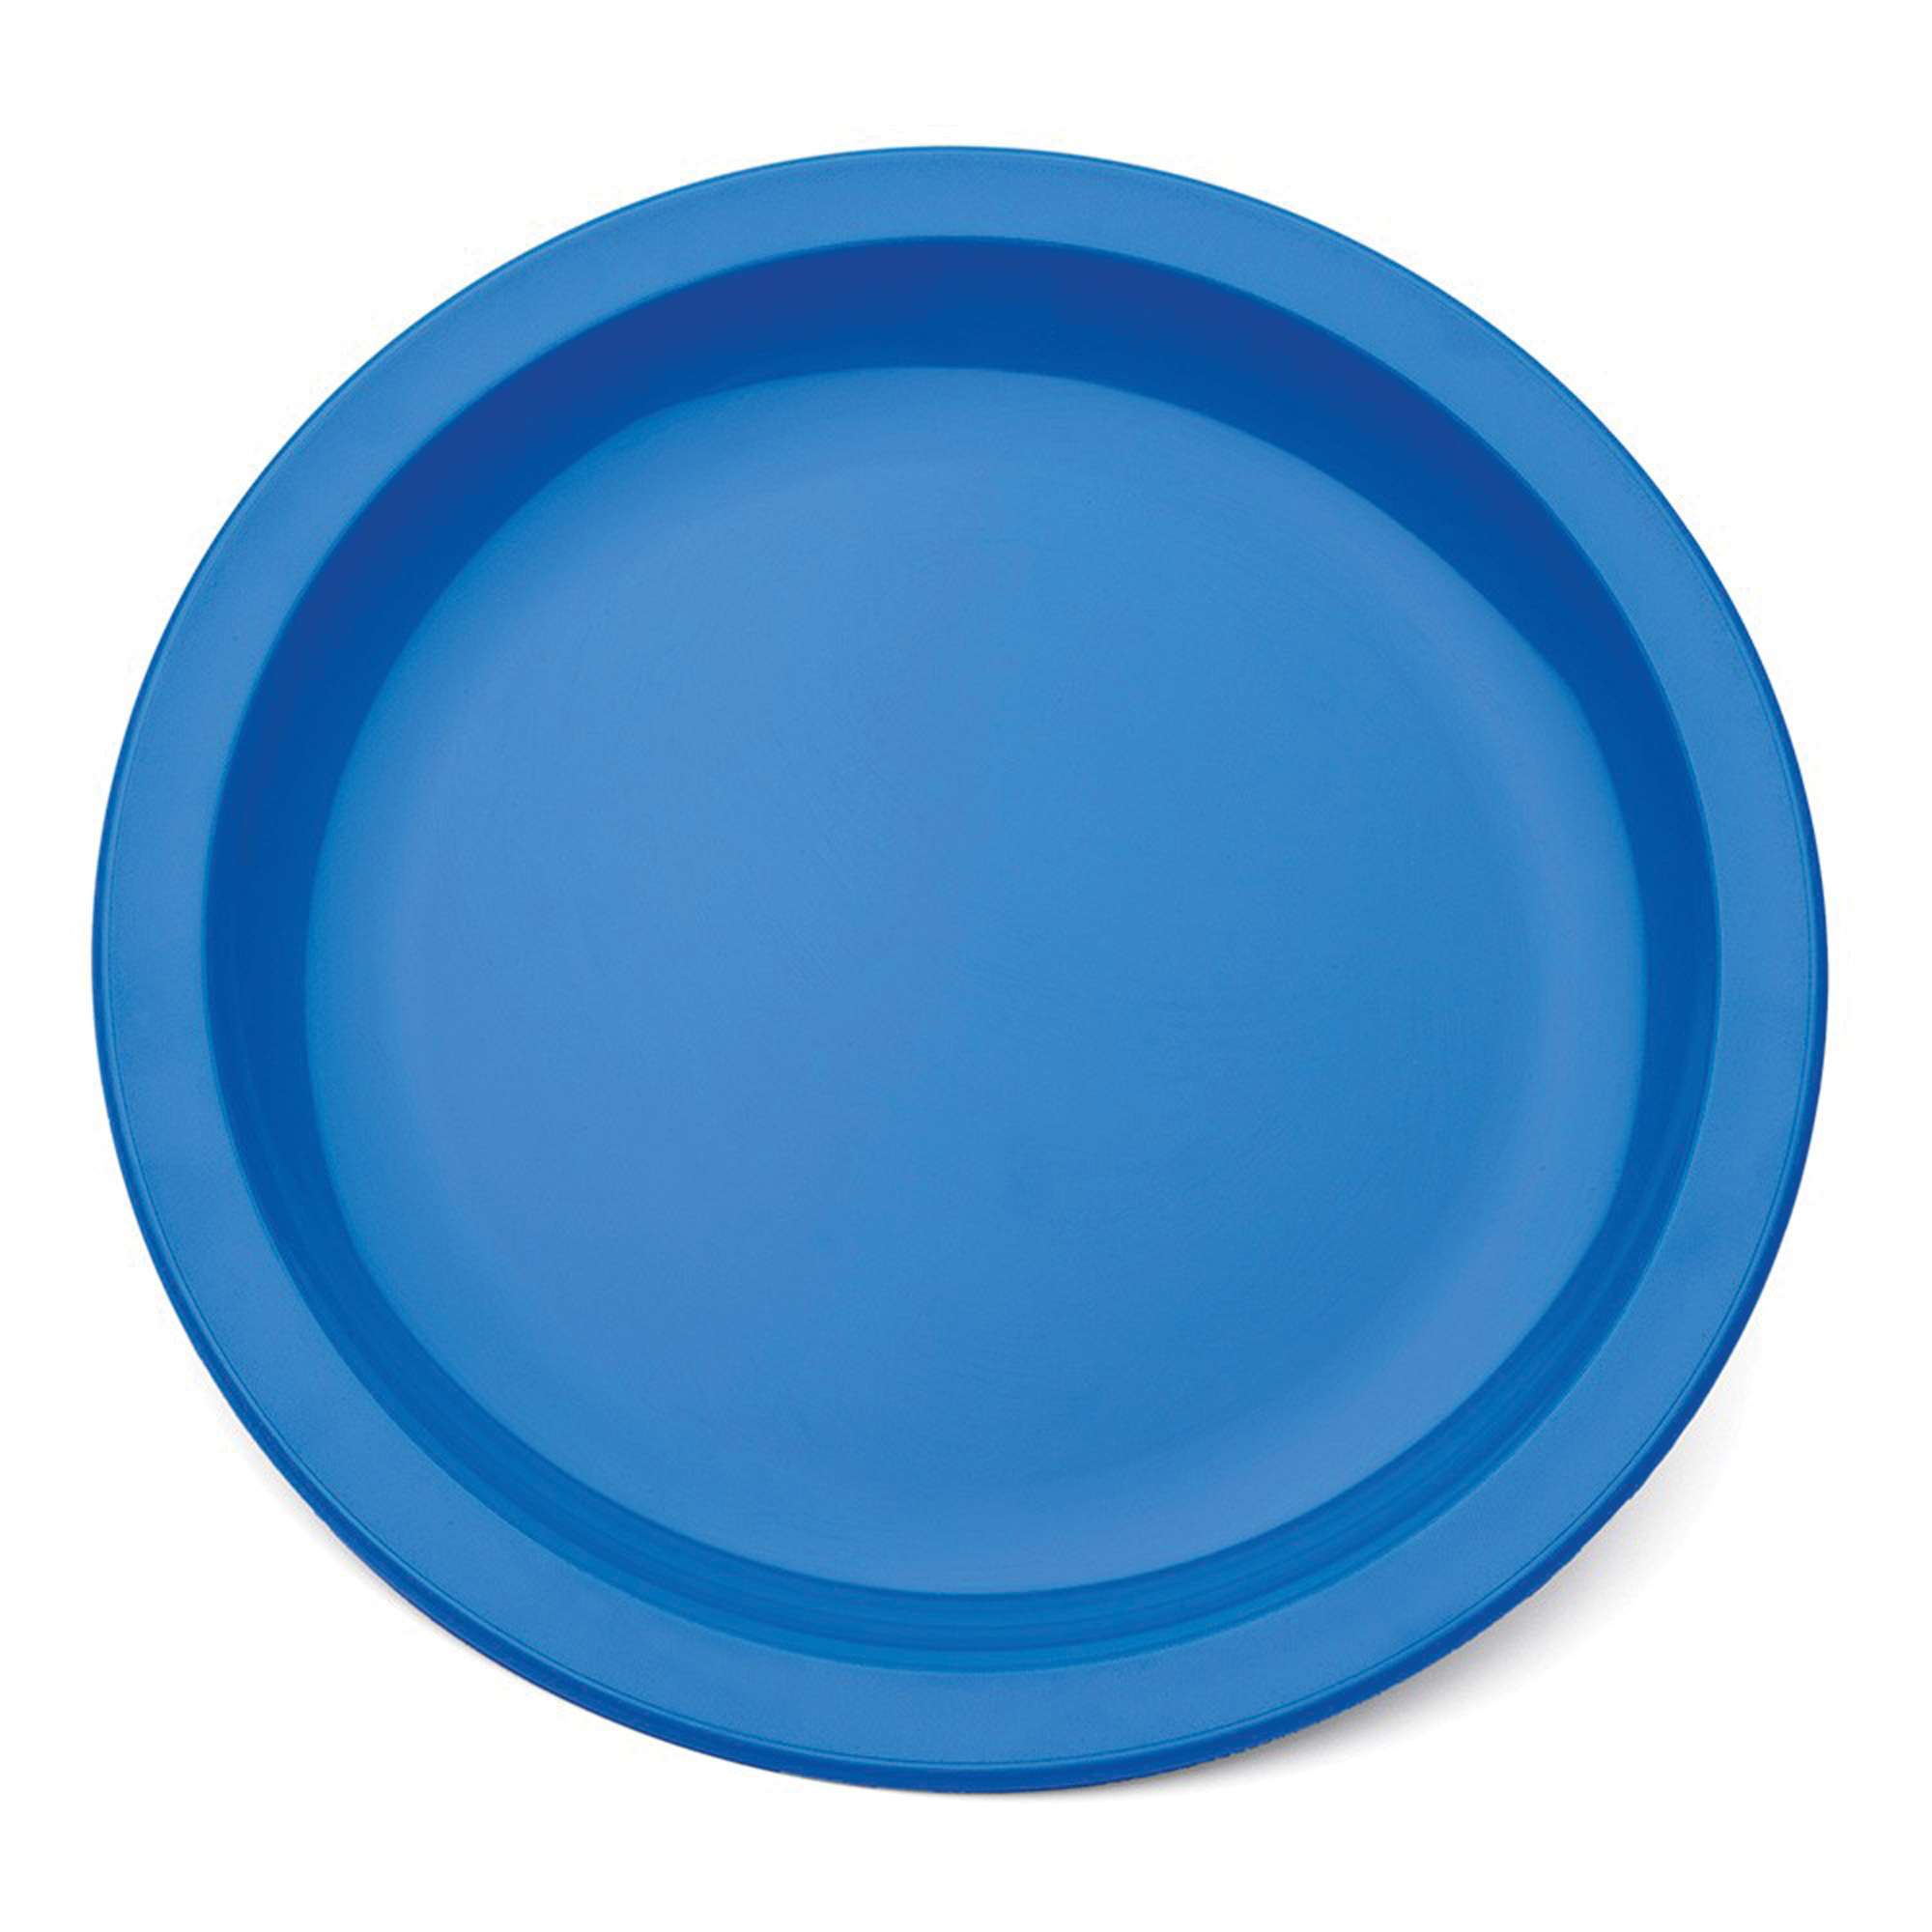 Polycarb Dinner Plate Narrow Rim Med Blue 25.5cm - Each